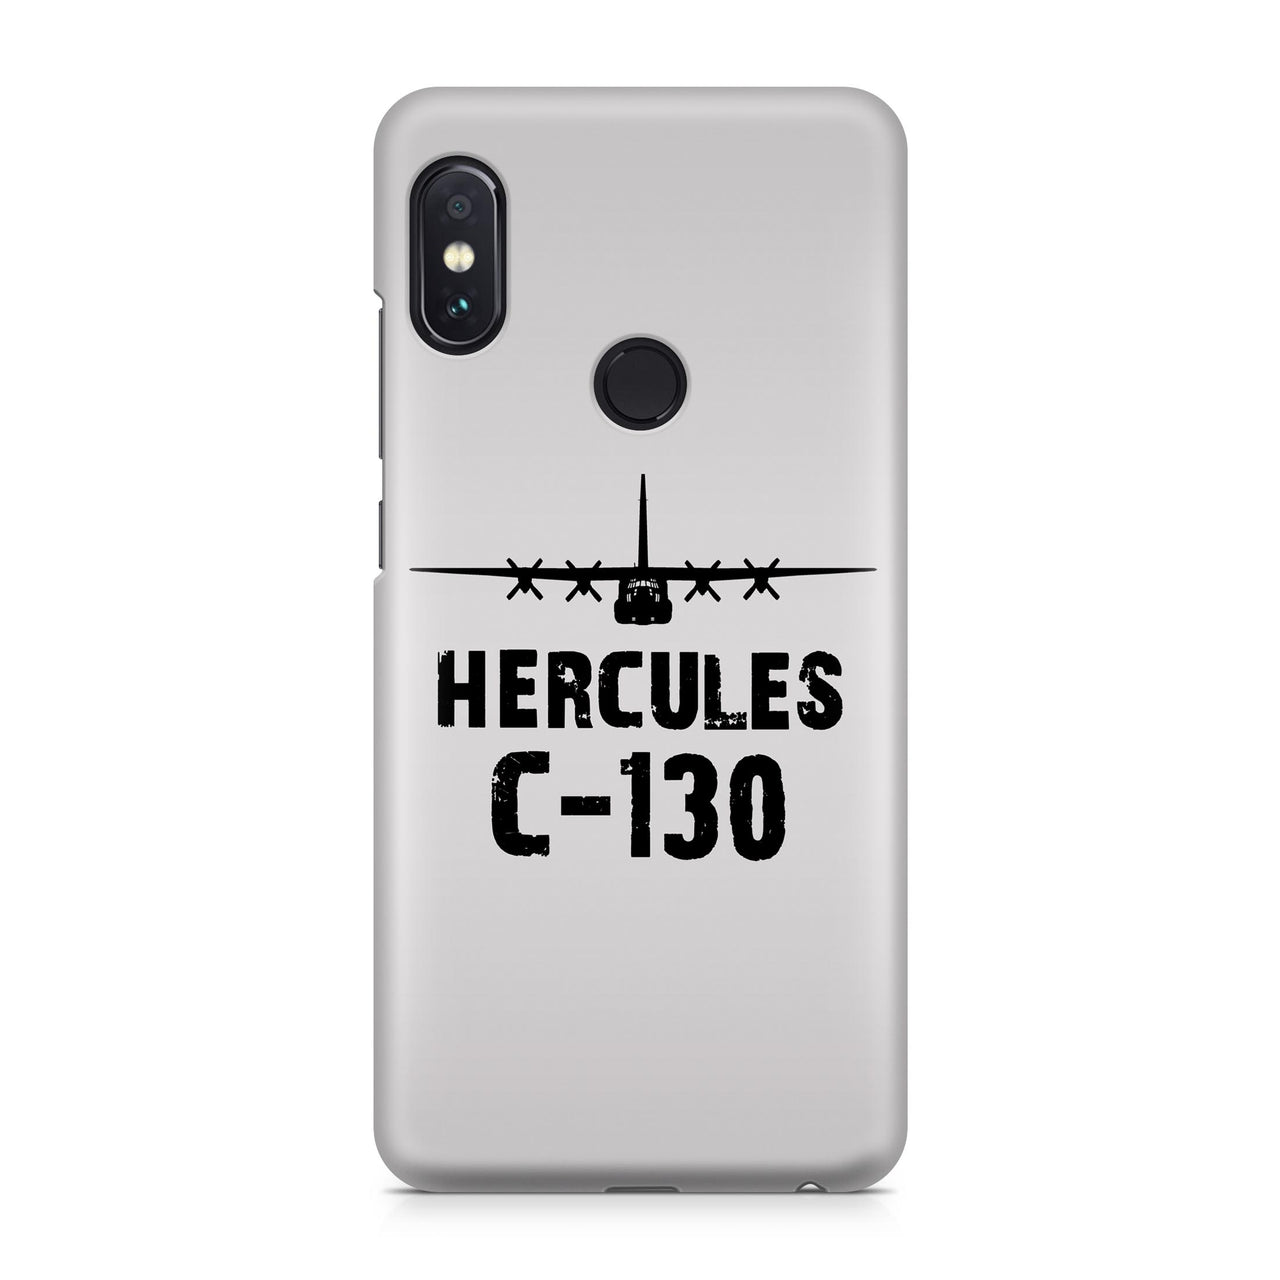 Hercules C-130 Plane & Designed Xiaomi Cases